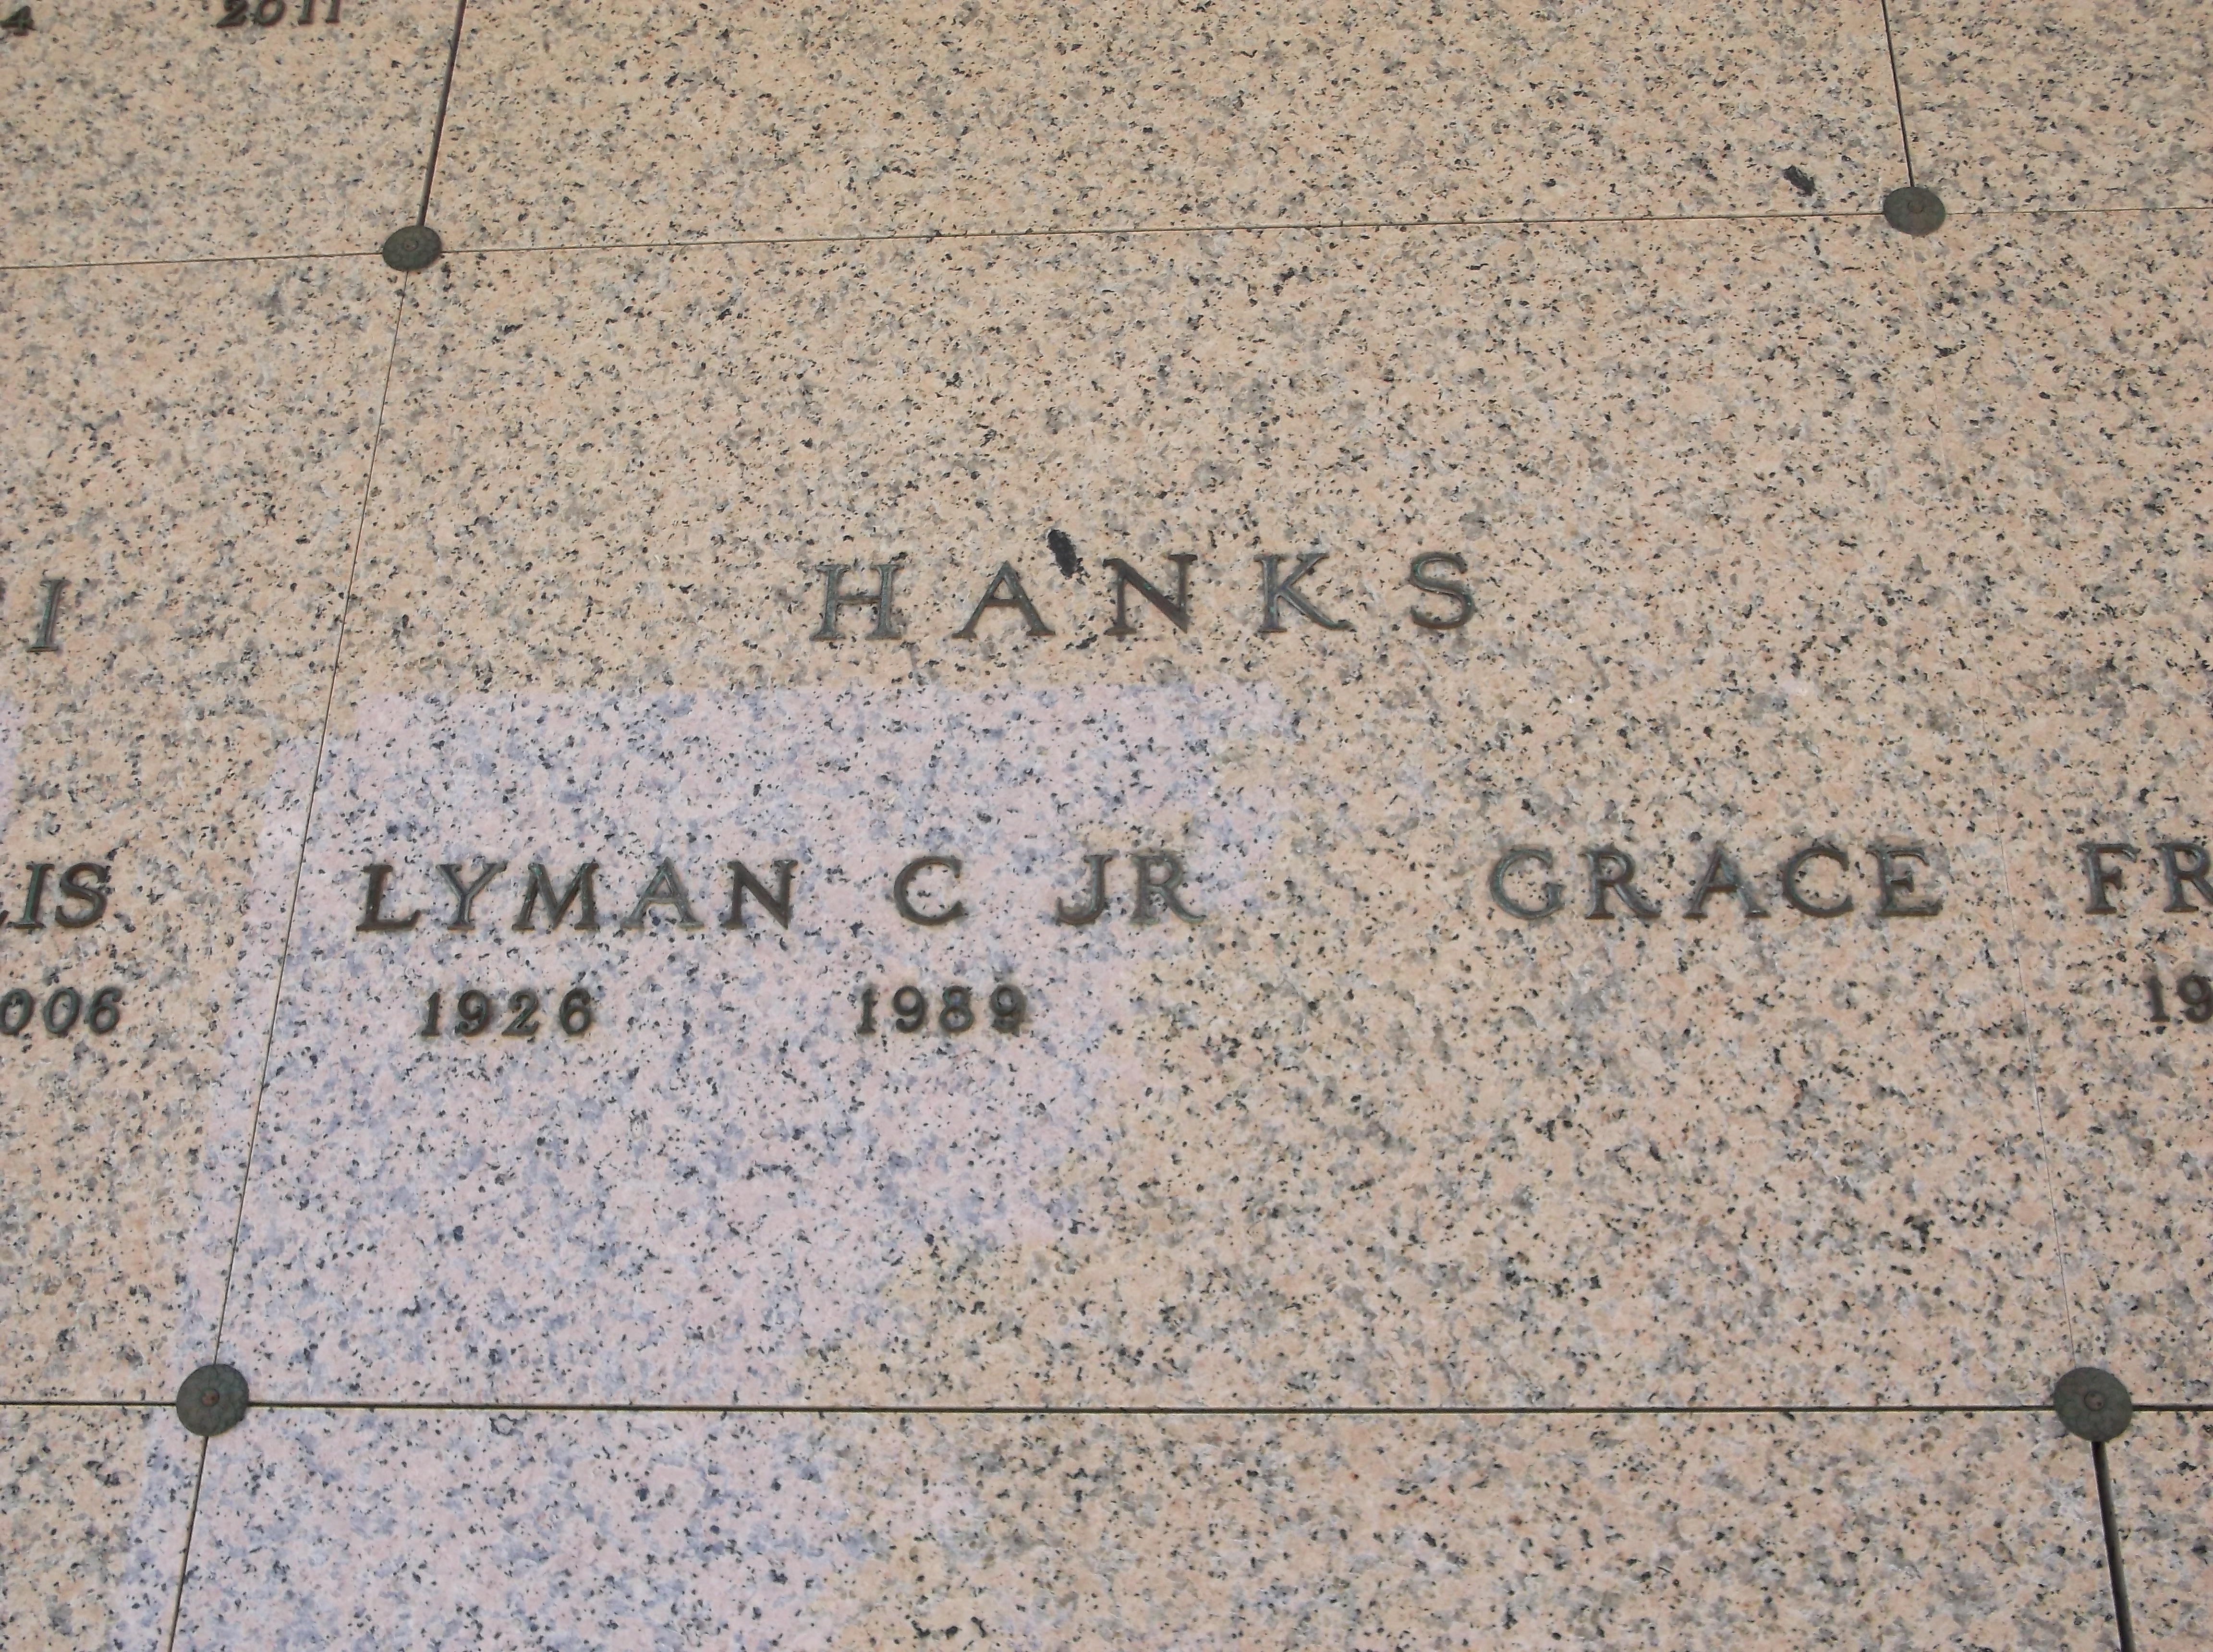 Lyman C Hanks, Jr